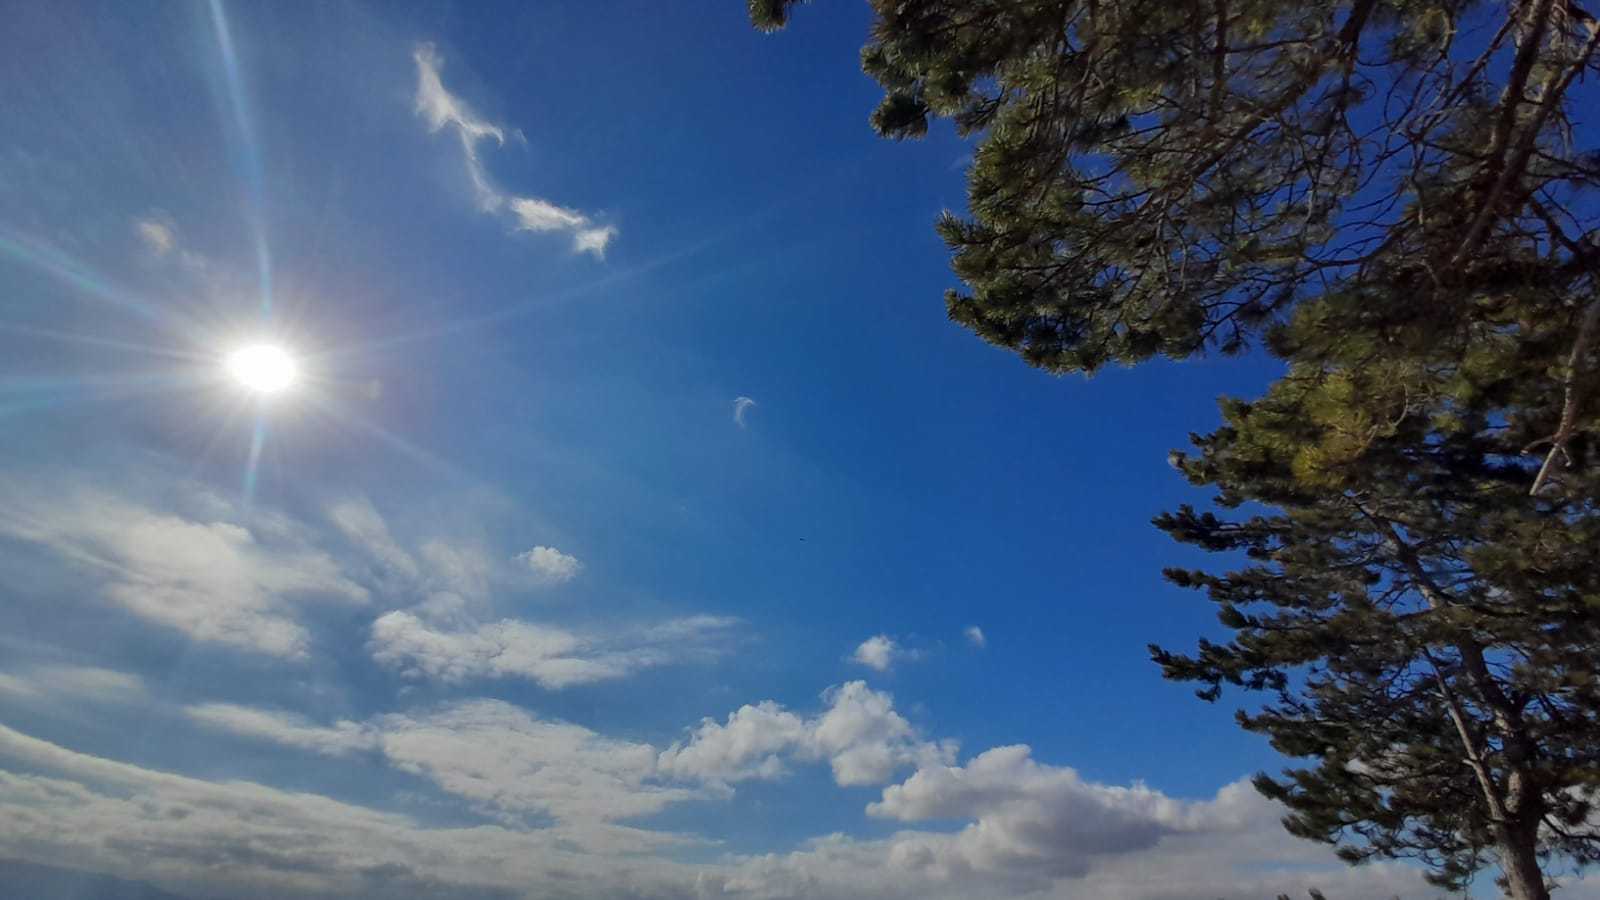 Meteo Agrigento: domani venerdì 29 Dicembre prevalentemente poco nuvoloso per velature.